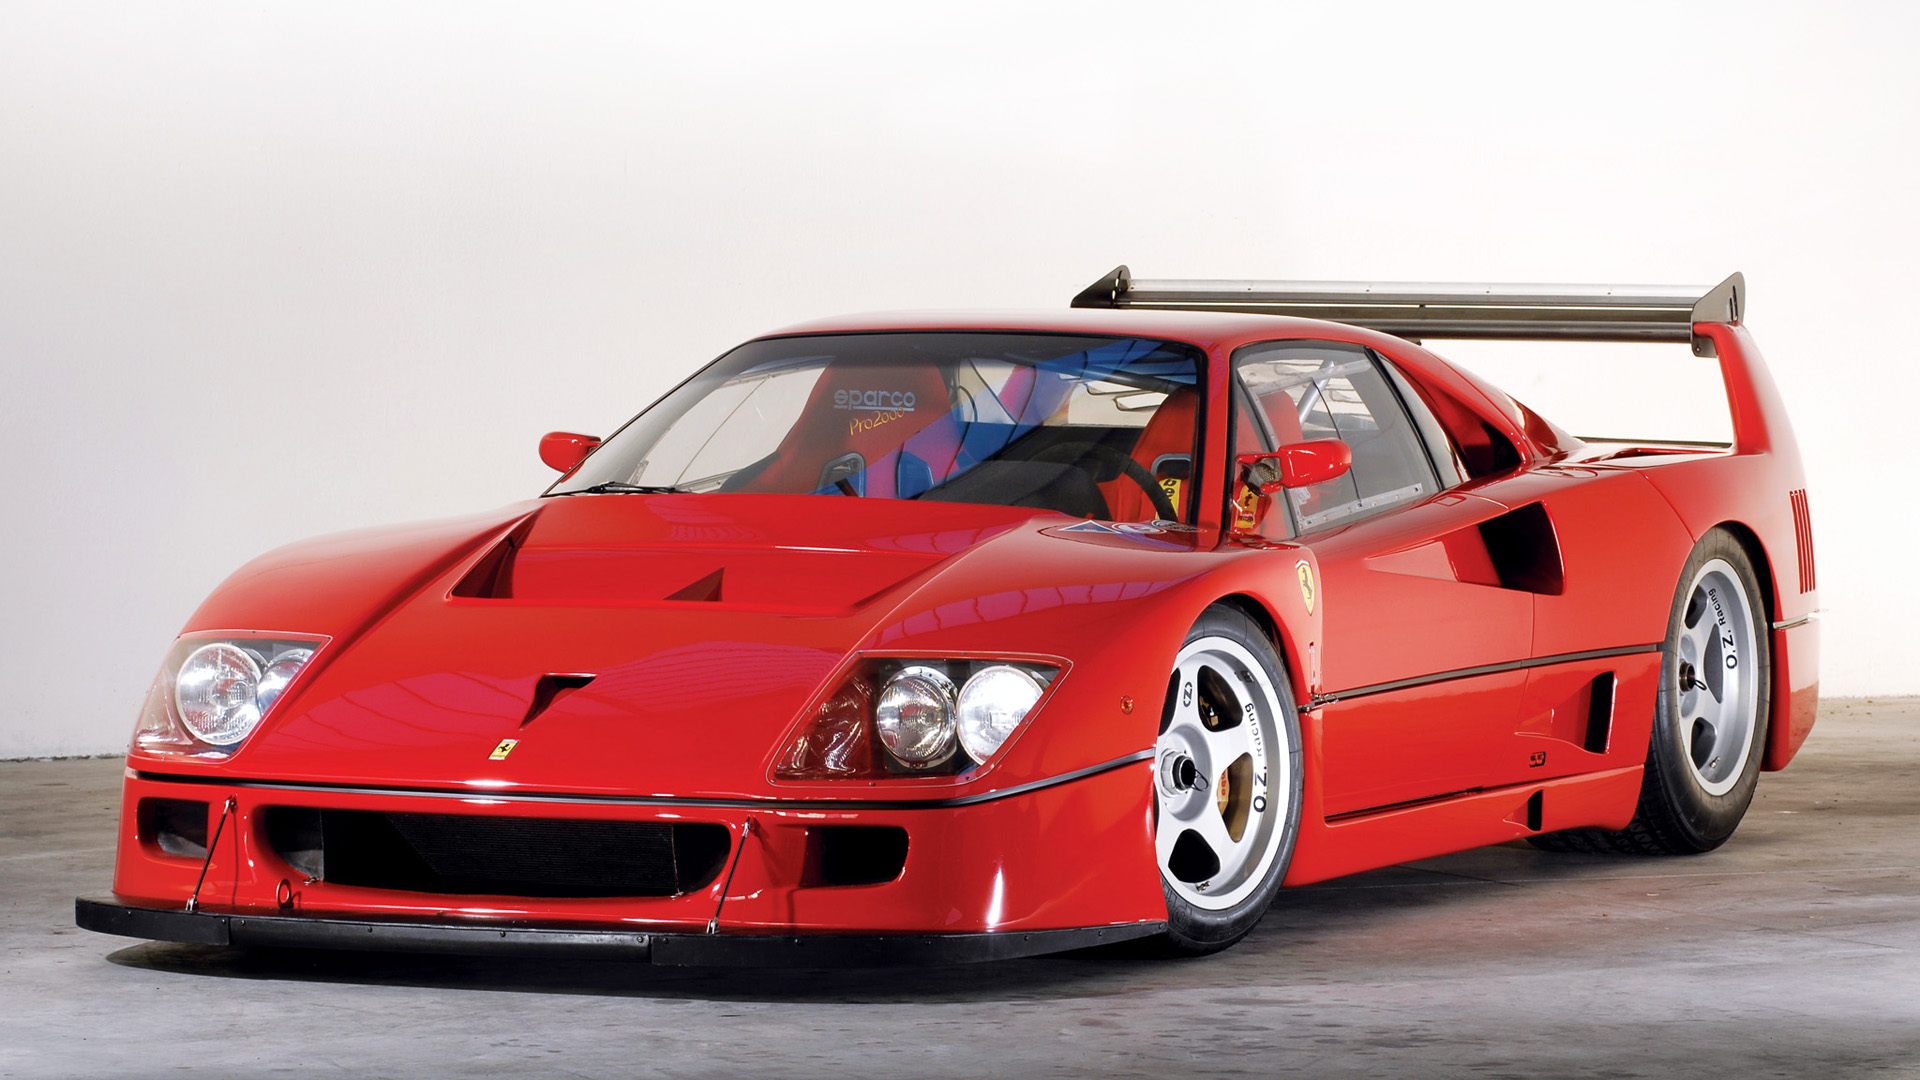 Free download wallpaper Ferrari, Car, Supercar, Vehicles, Ferrari F40 Lm on your PC desktop